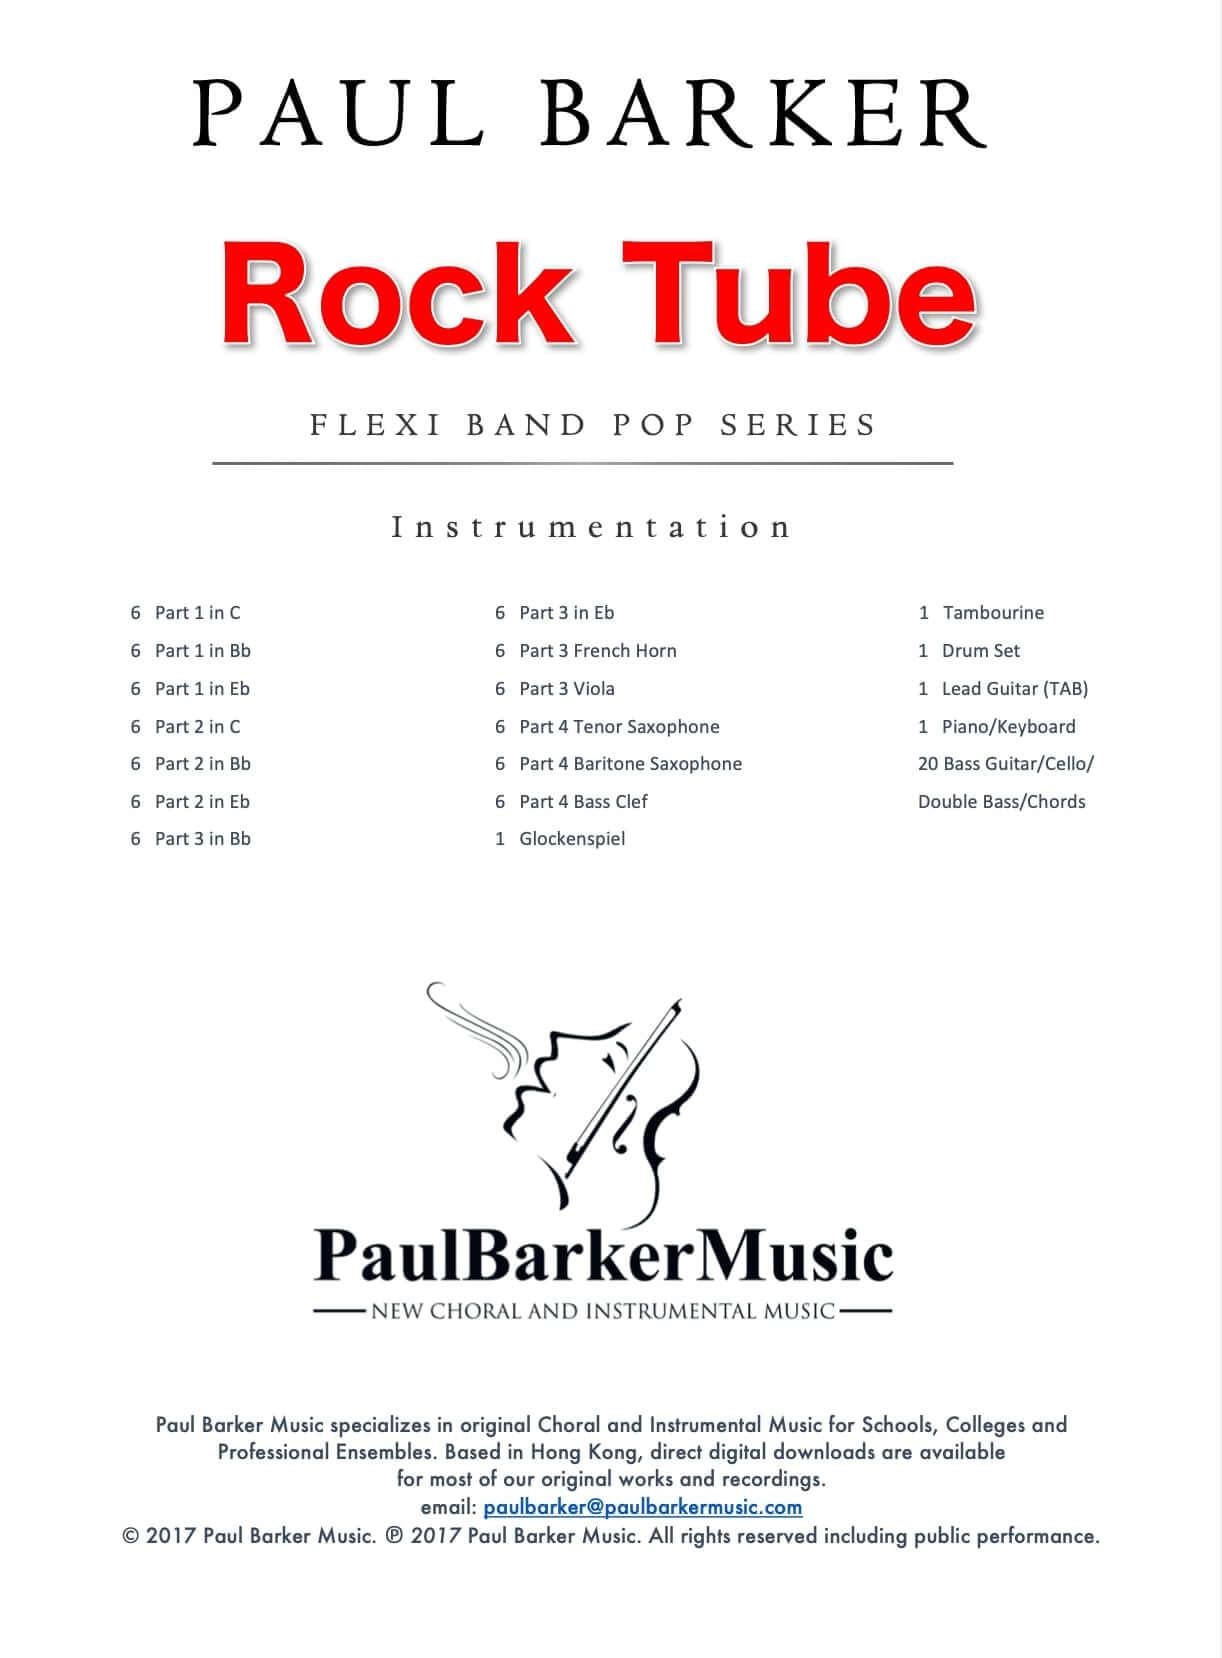 RockTube - Paul Barker Music 